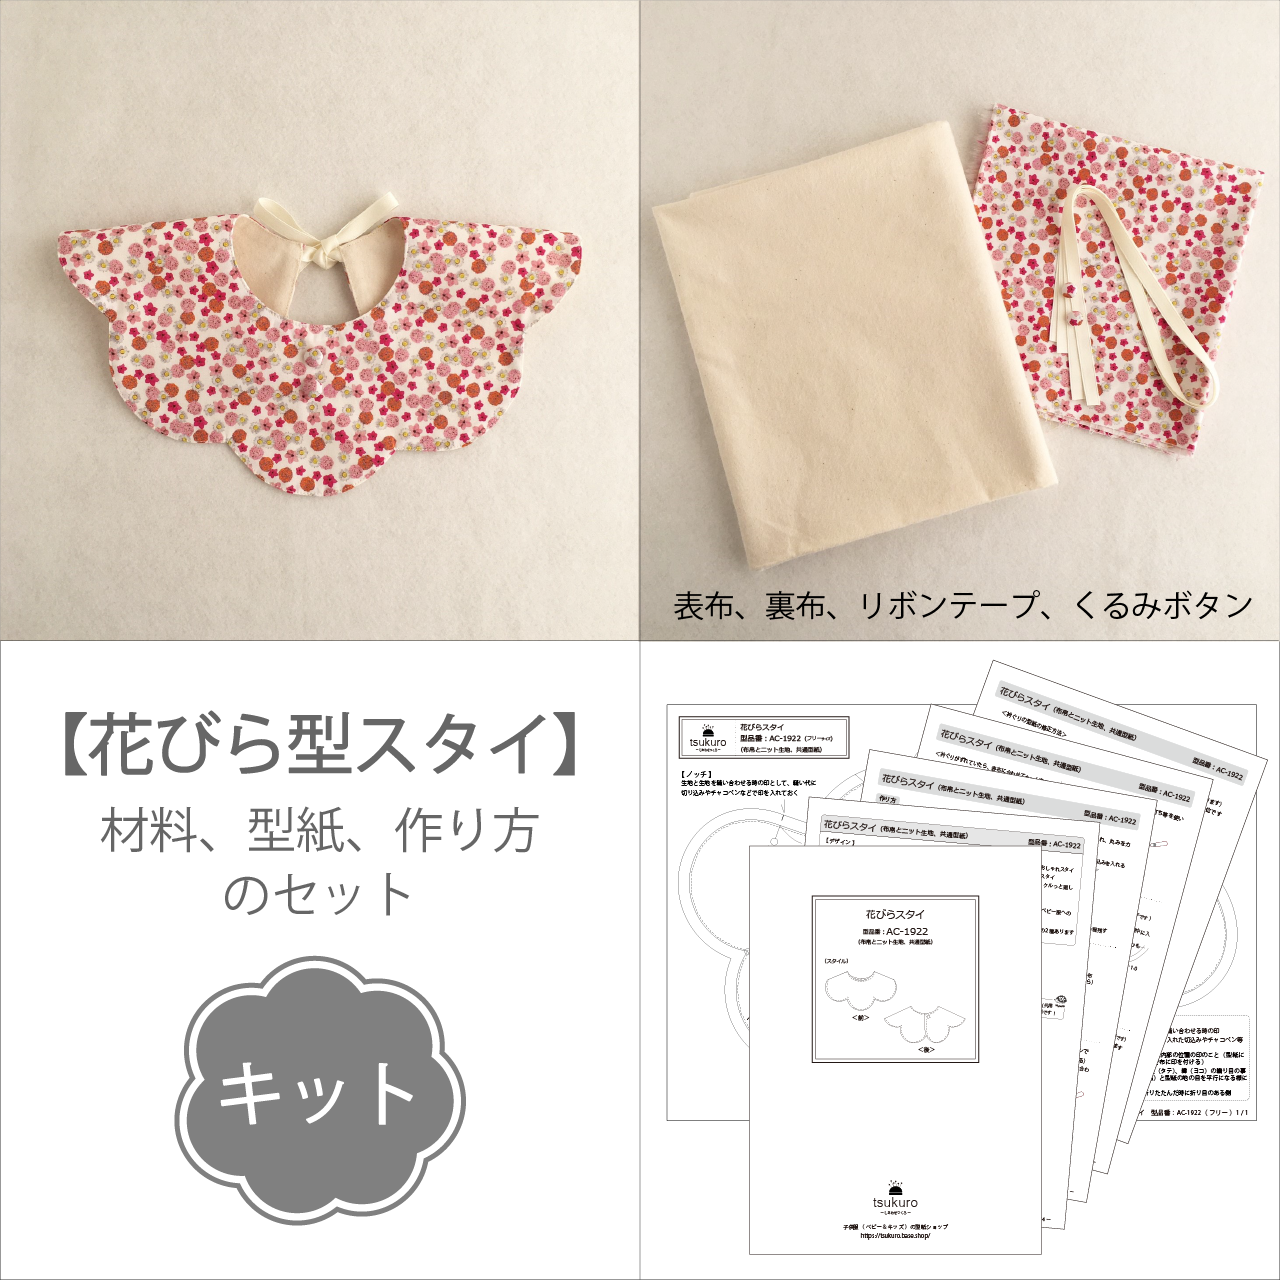 キット 花びらスタイ 布地と型紙と作り方のセット Kit Ac 1922 子供服の型紙ショップ Tsukuro ツクロ